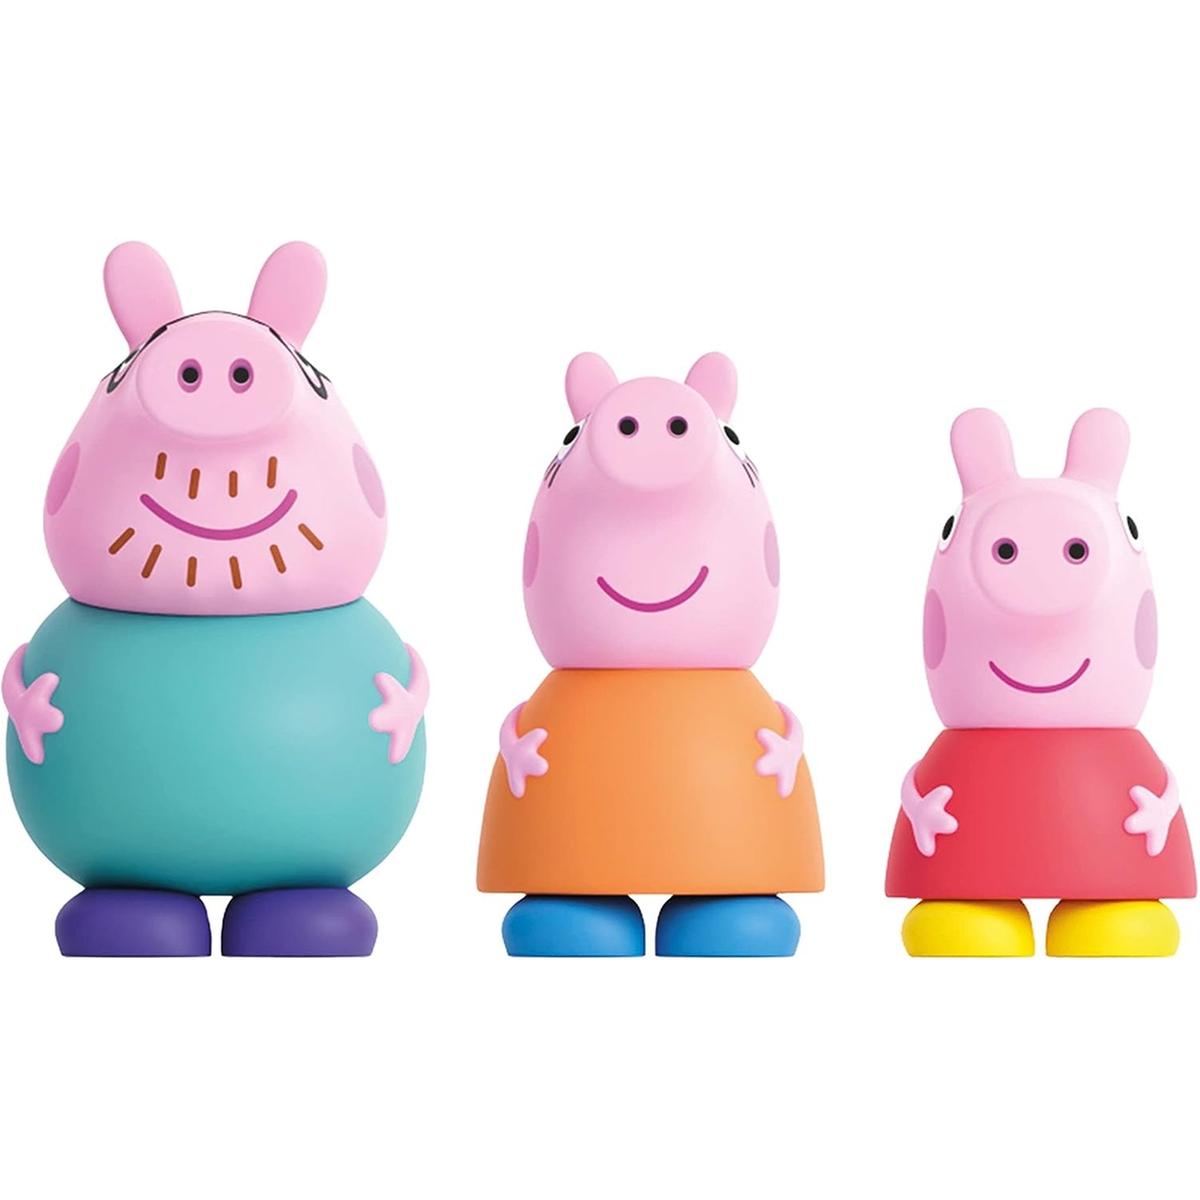 Comprar figuras y muñecos de Peppa Pig ⭐ A soñar jugando!